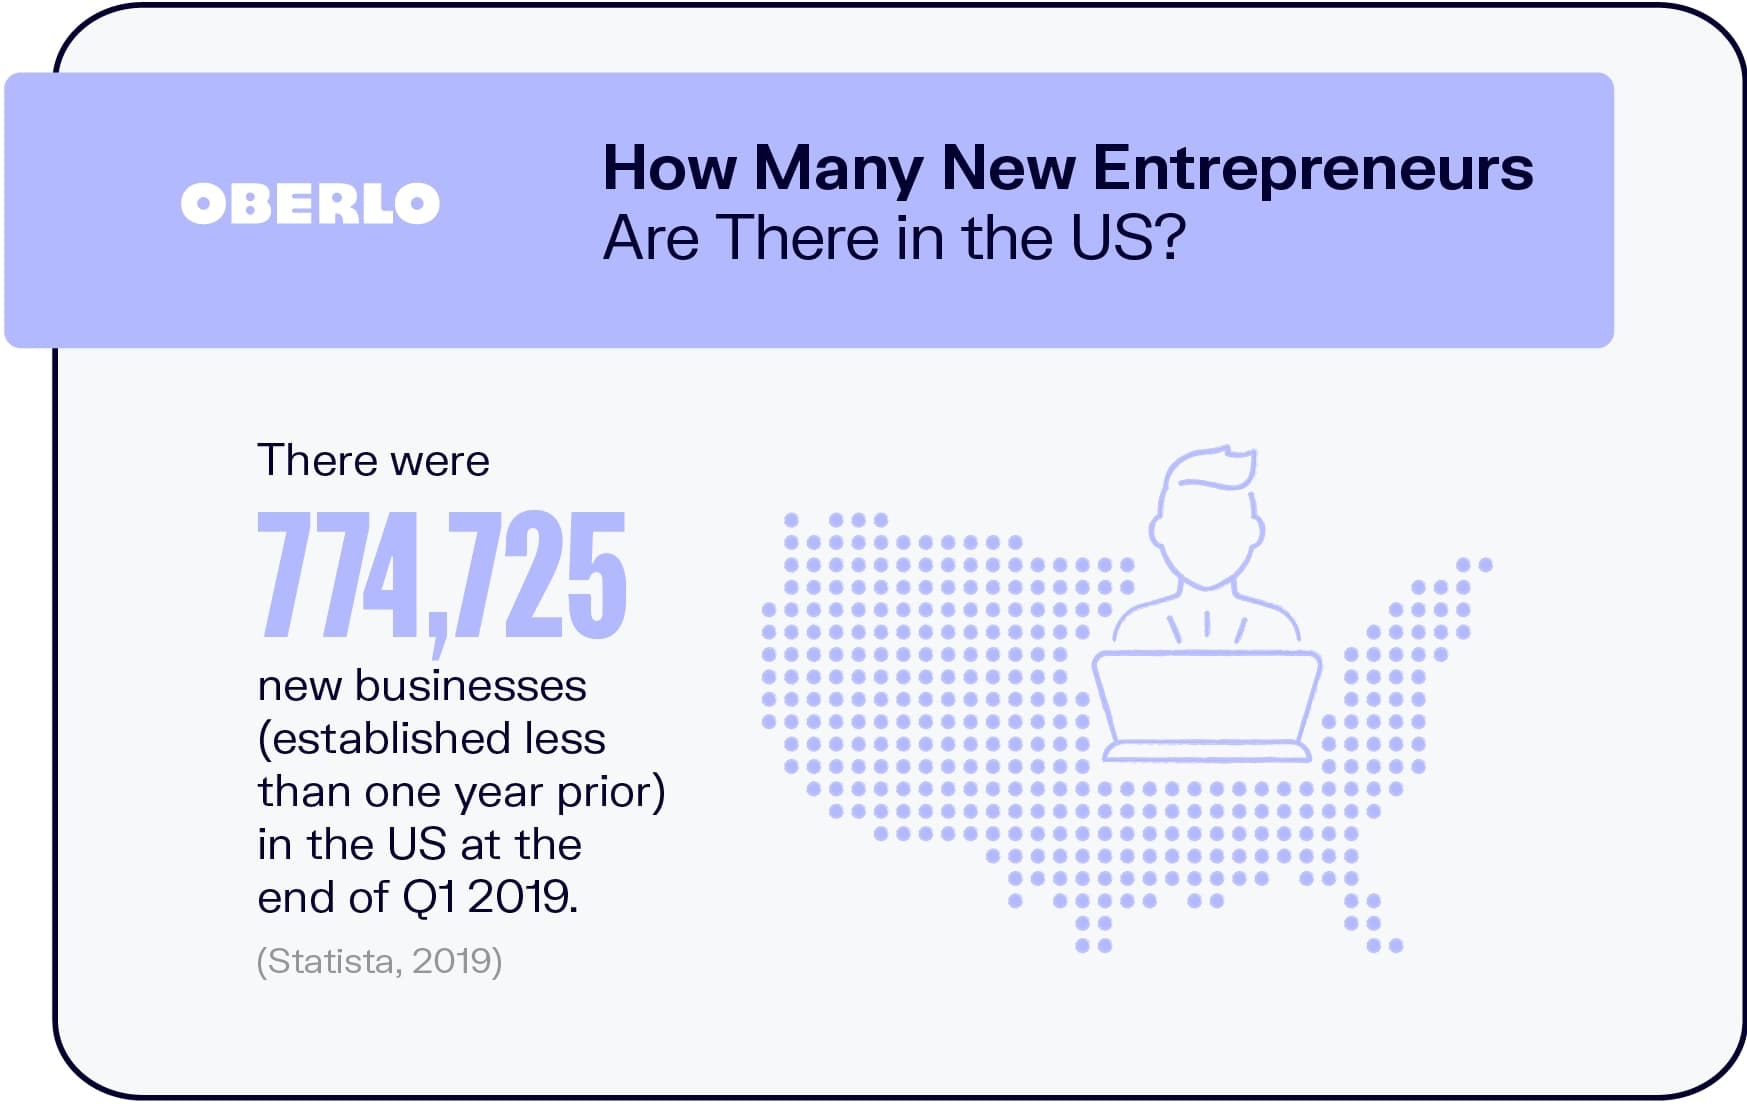 ¿Cuántos nuevos empresarios hay en los EE.UU.?